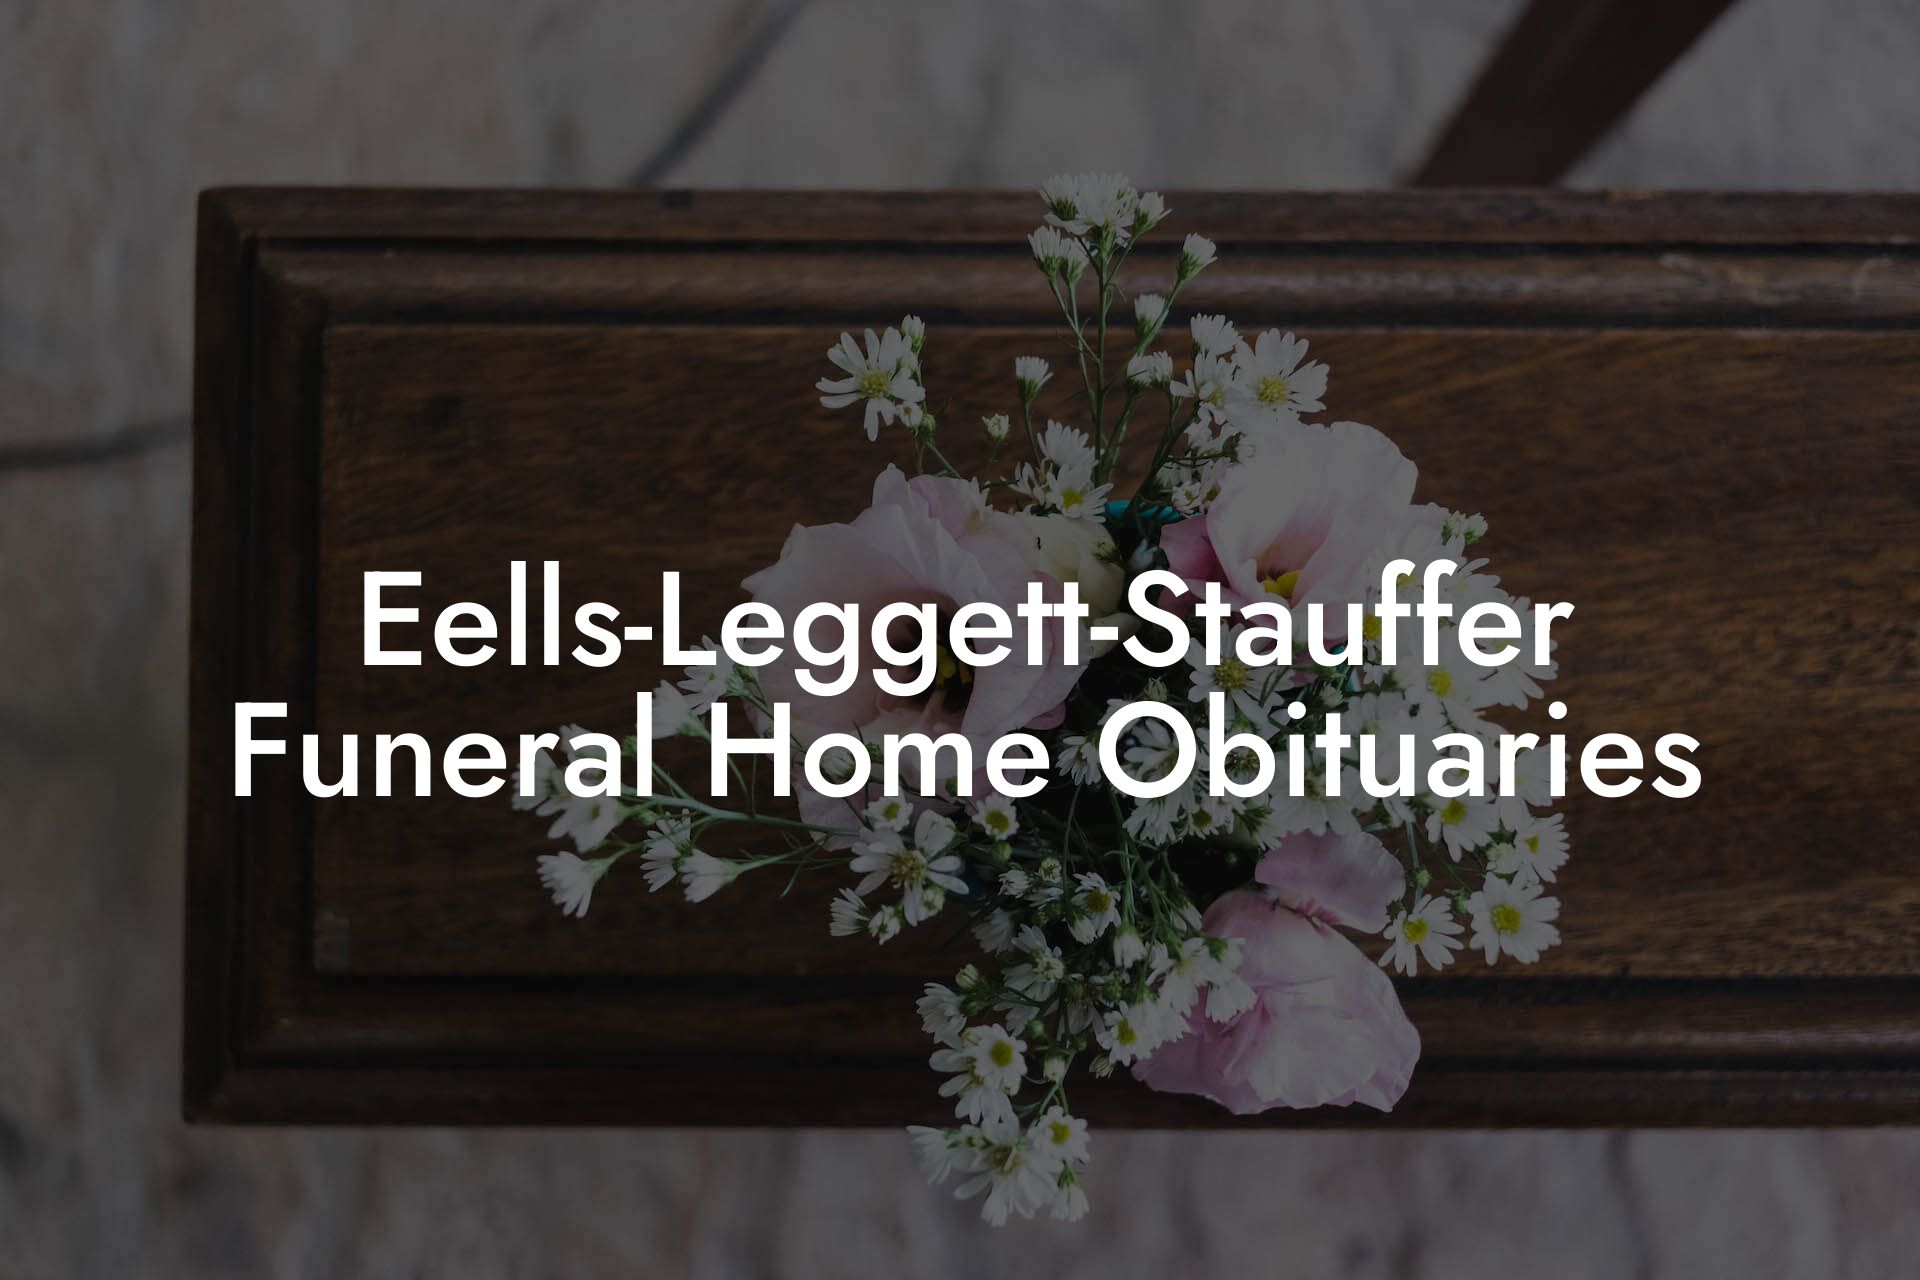 Eells-Leggett-Stauffer Funeral Home Obituaries